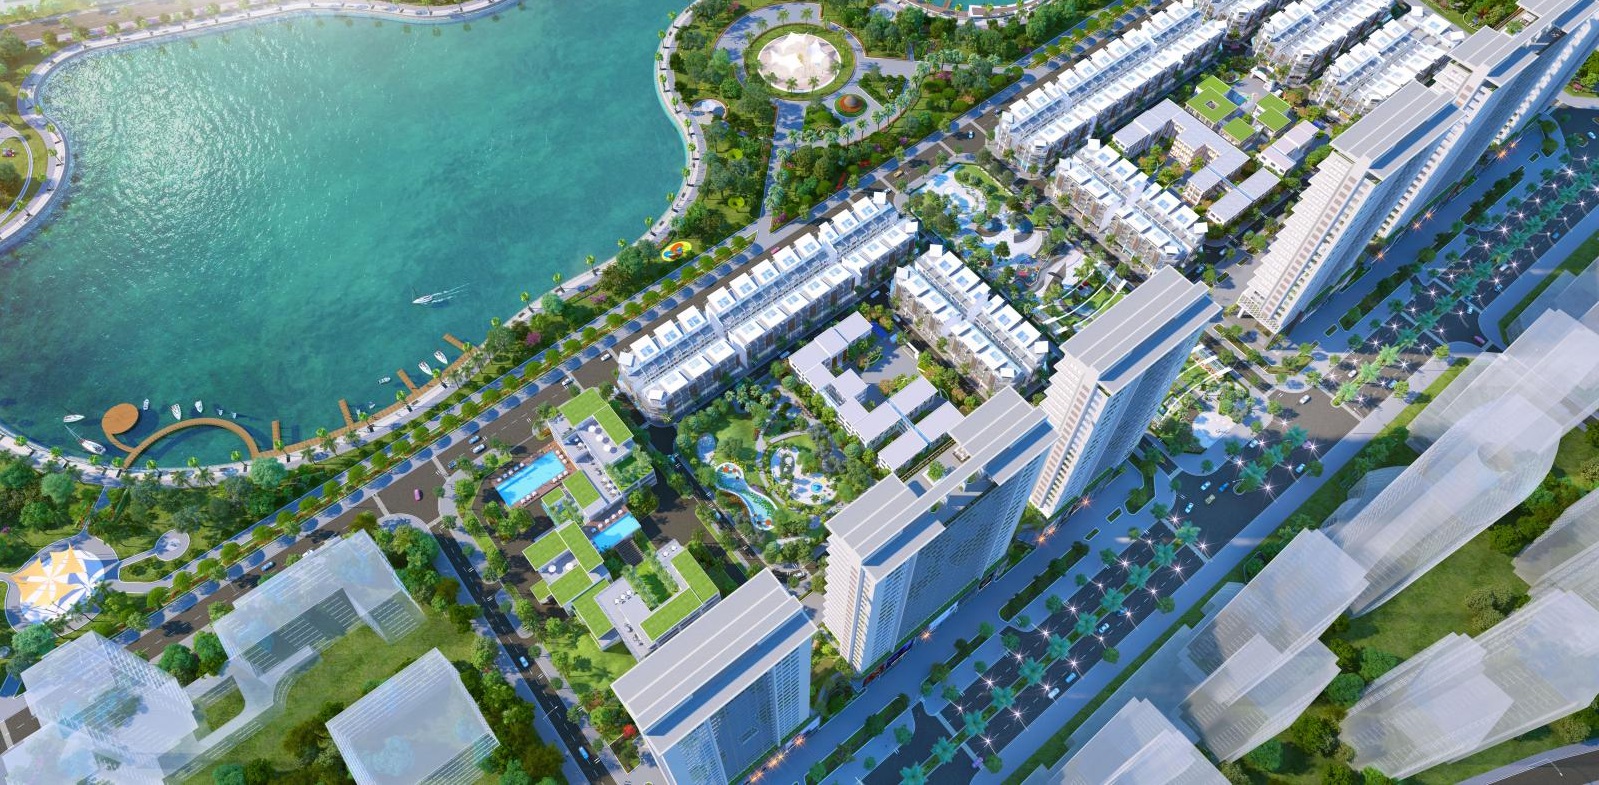 5 dự án chung cư quận Long Biên thuộc top đáng mua nhất 2021